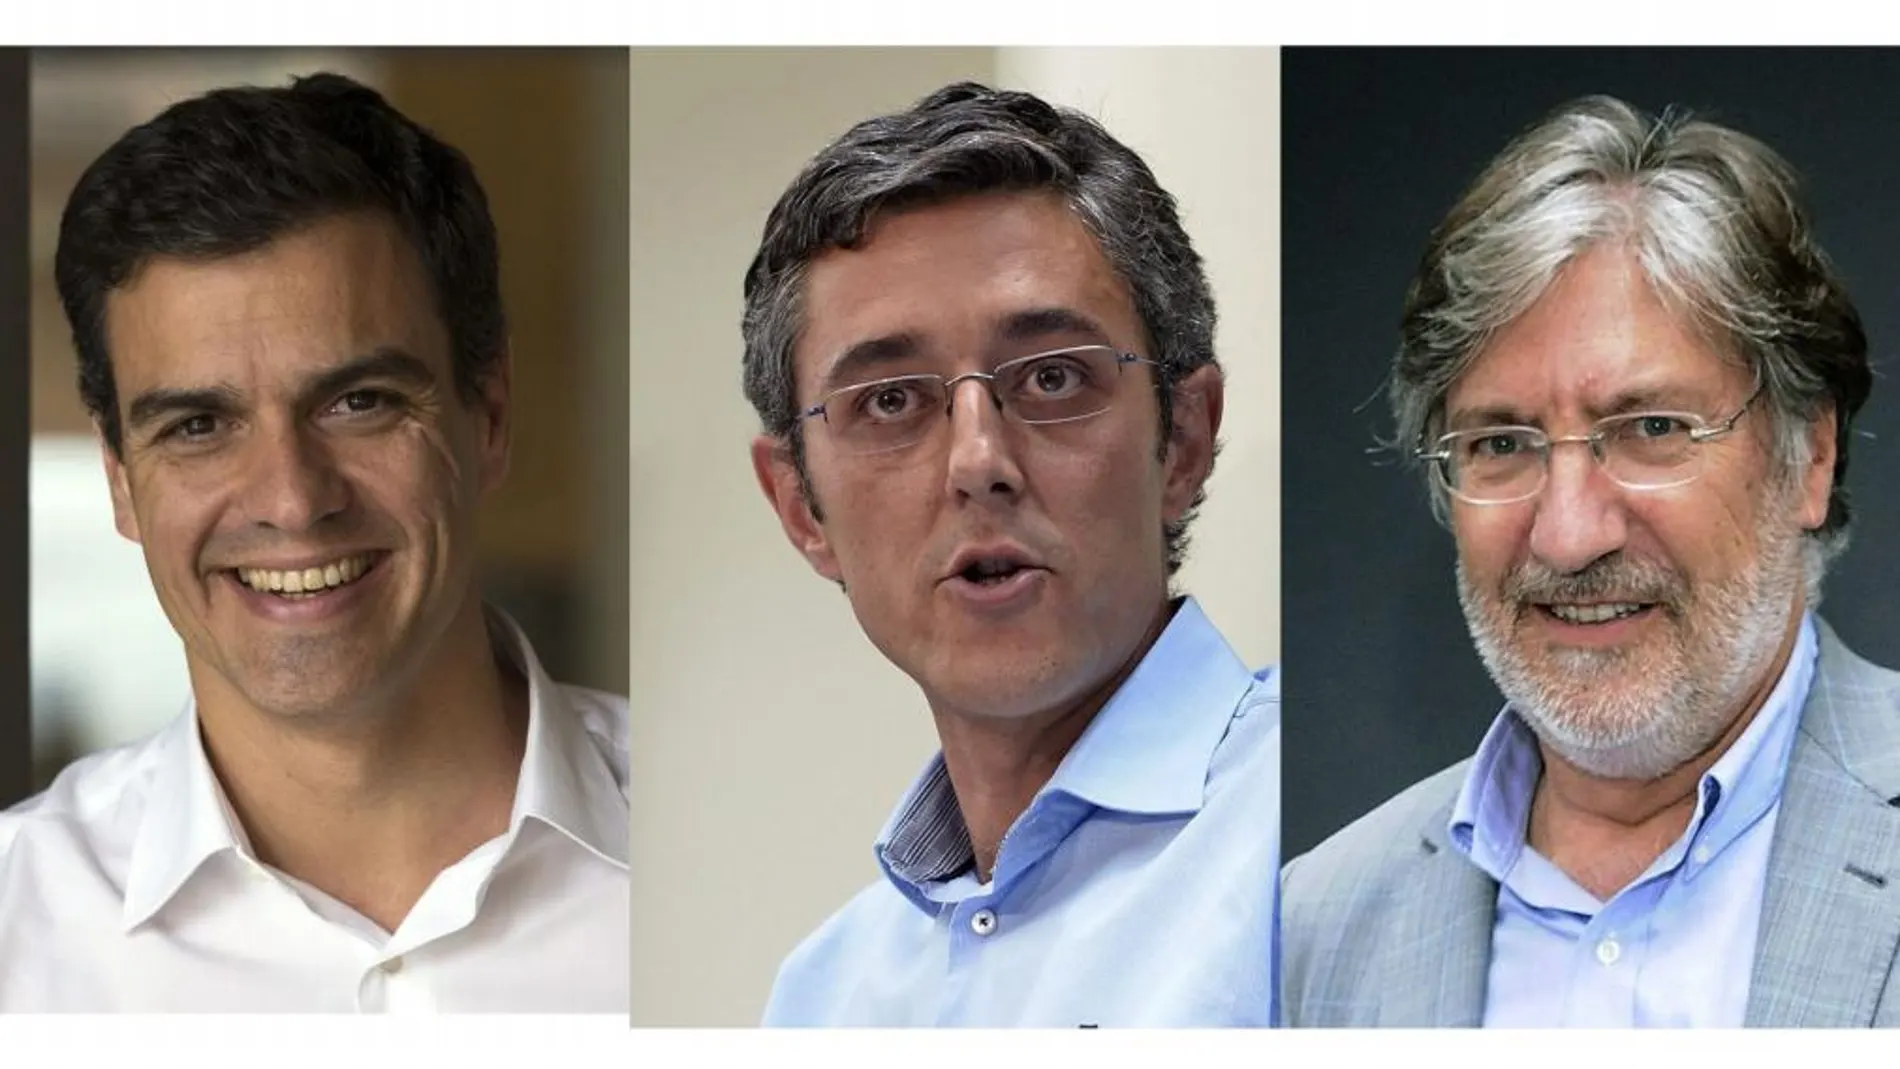 Fotografías de los candidatos oficiales a secretario general del PSOE, Pedro Sánchez (i), Eduardo Madina (c) y José Antonio Pérez Tapias (d), con 41.338, 25.238 y 9.912 avales.